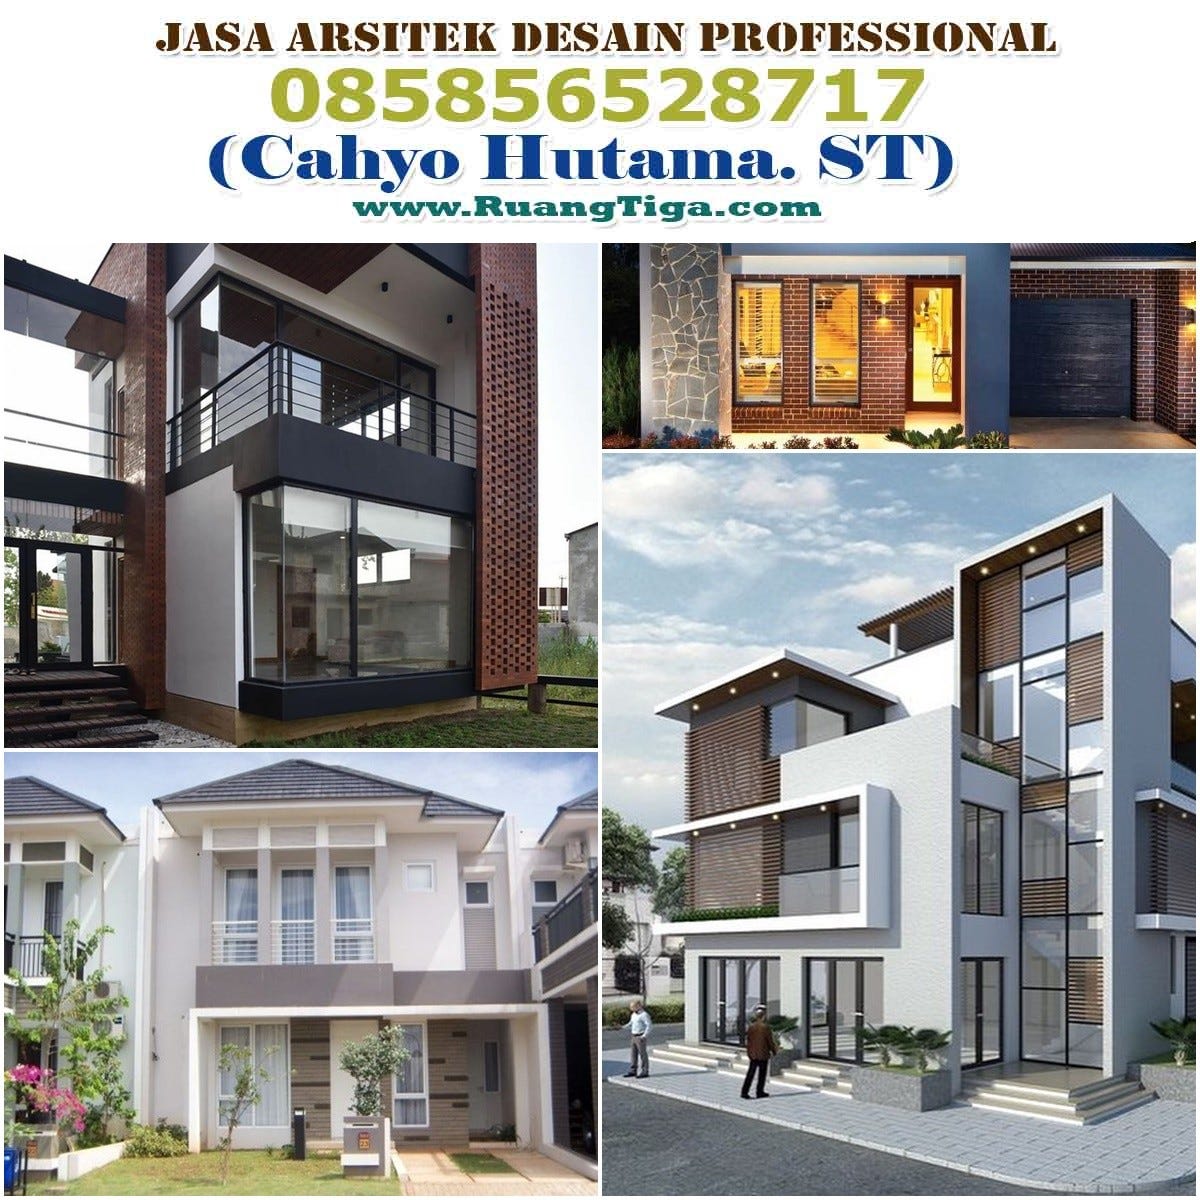 085856528717 Jasa Desain Rumah Online Kota Semarang Jawa Tengah